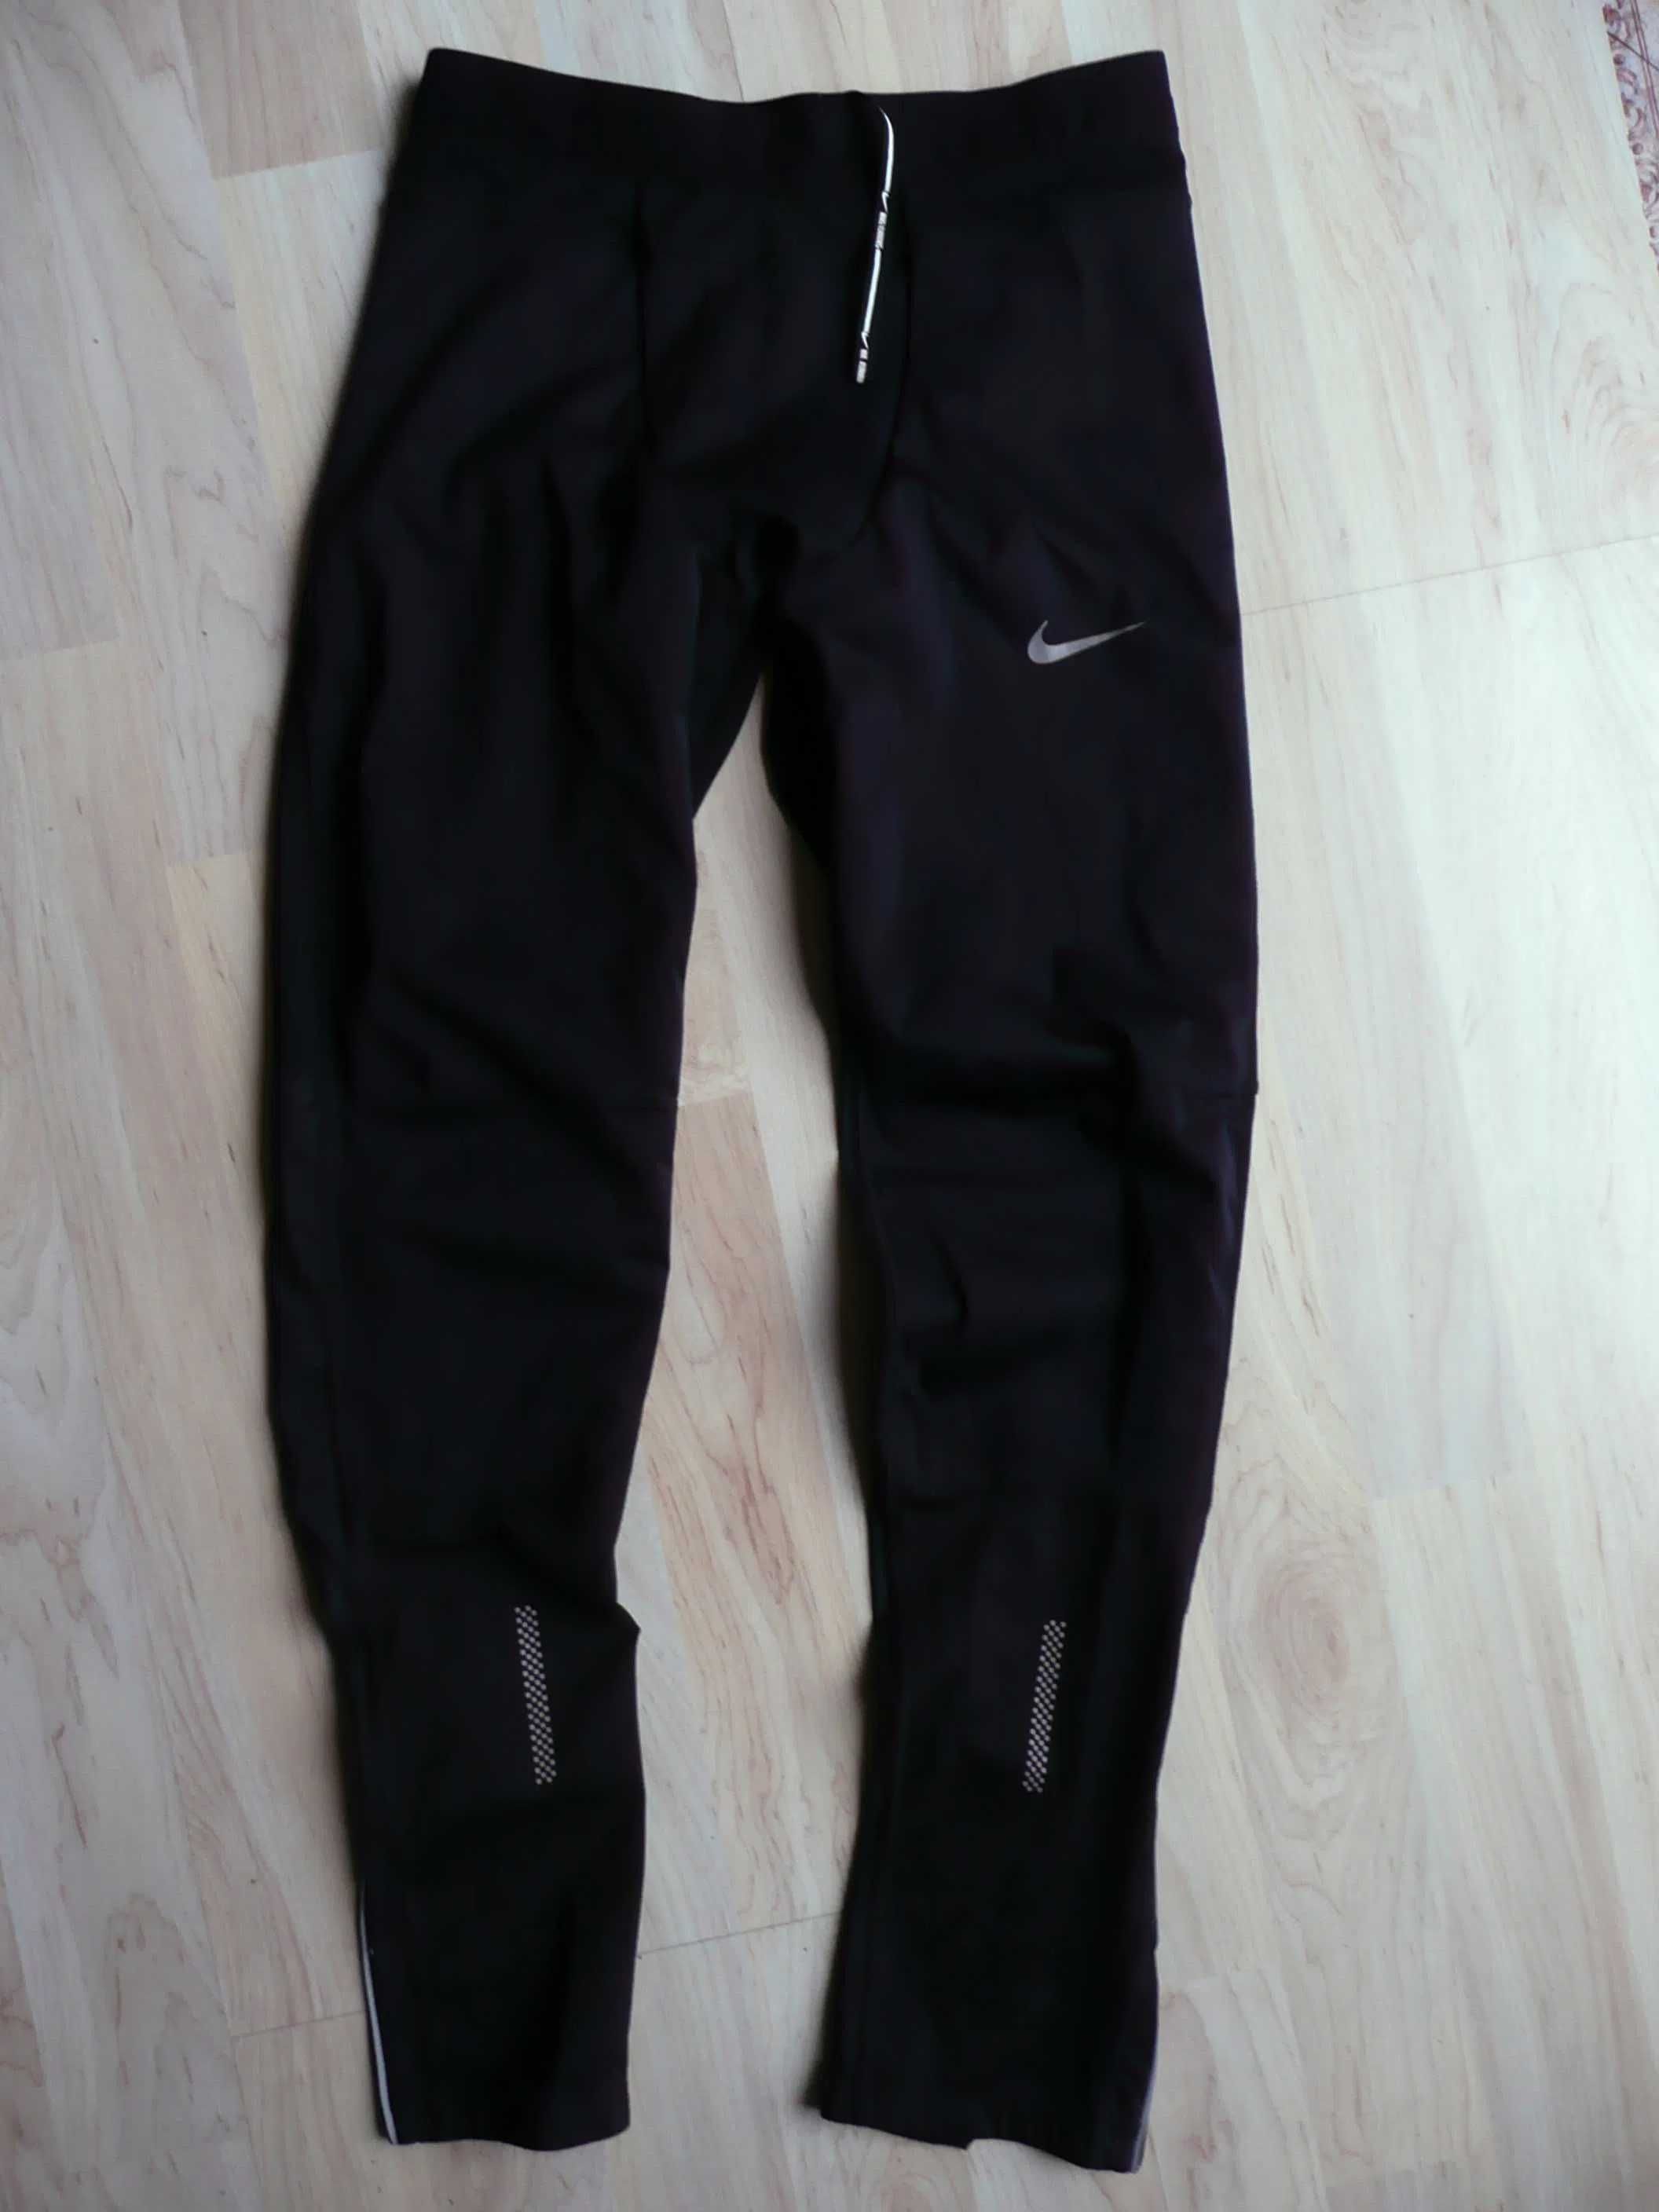 męskie legginsy biegowe Nike Dri-Fit Shield Tight rozm M